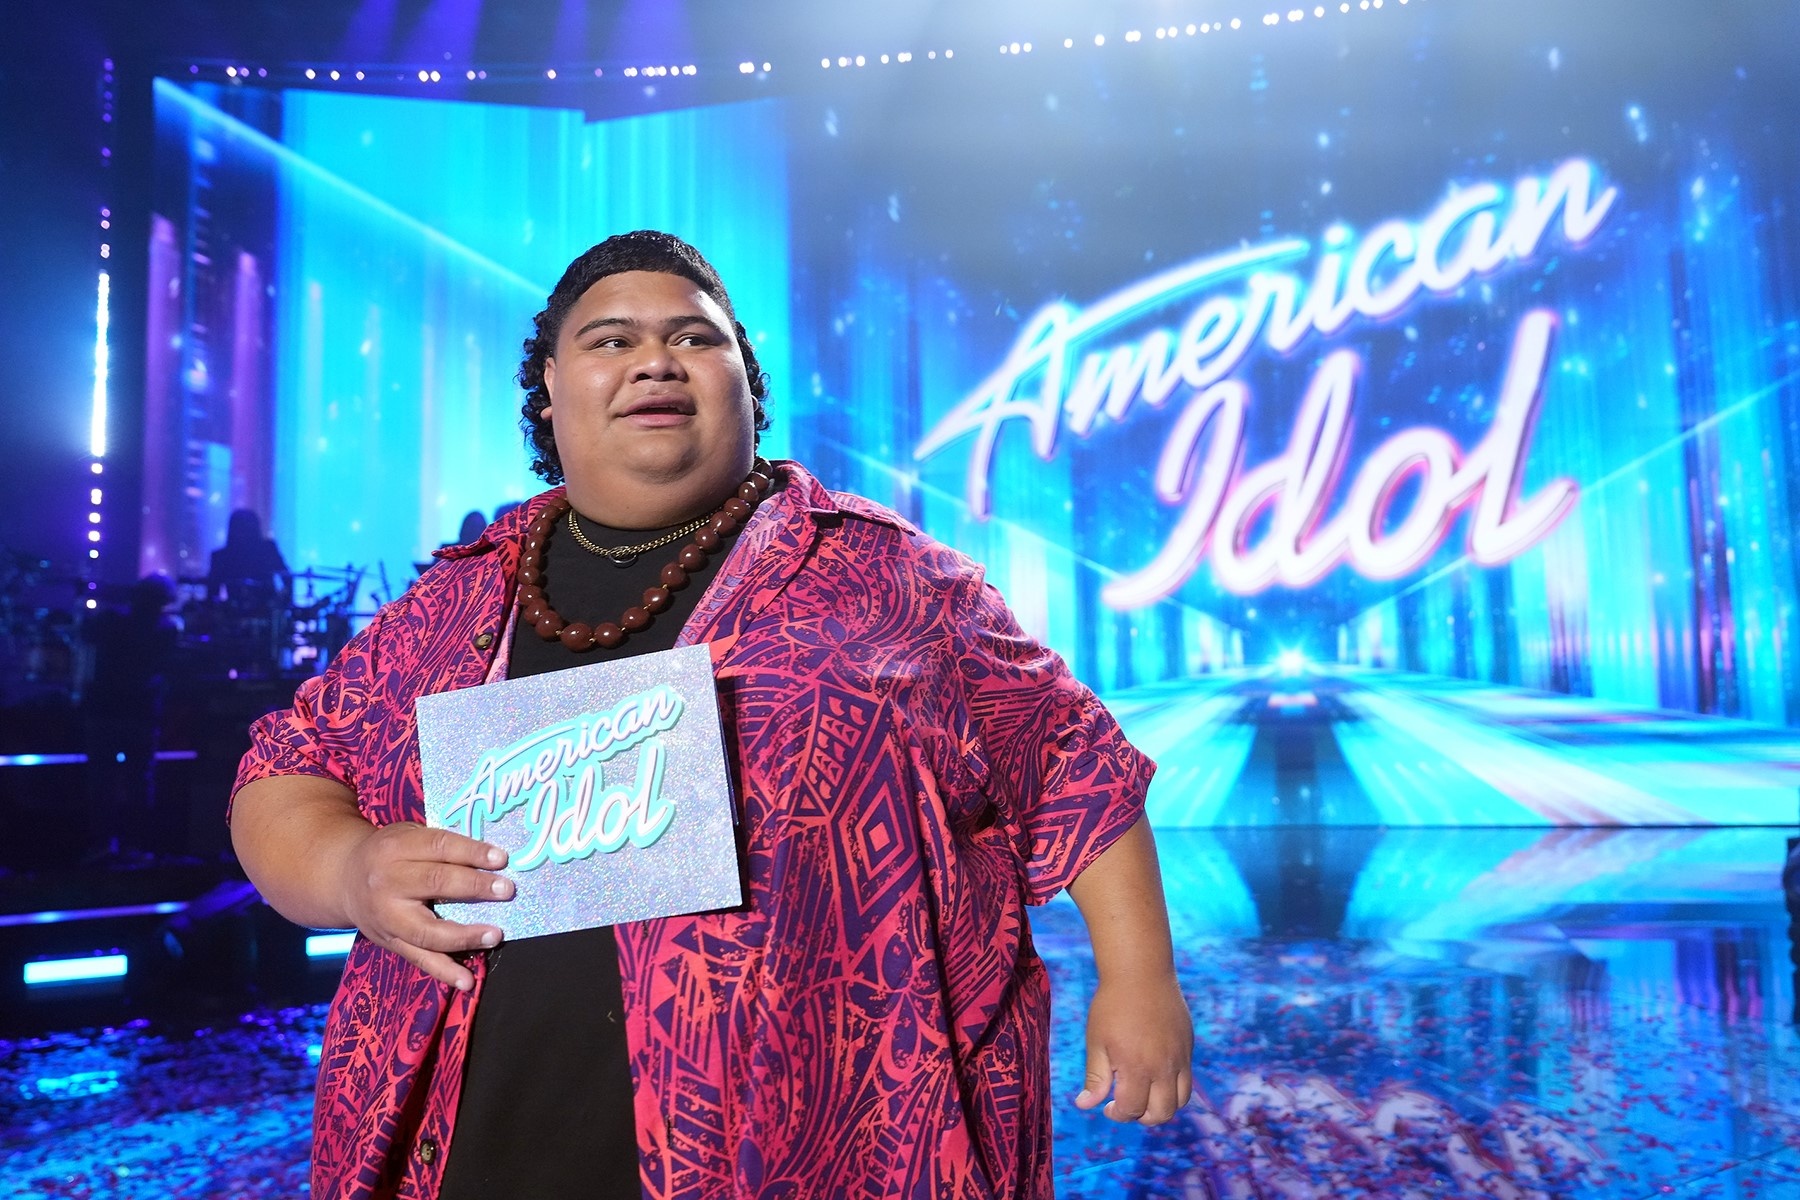 Quán quân American Idol phản hồi tin gian lận - ảnh 1